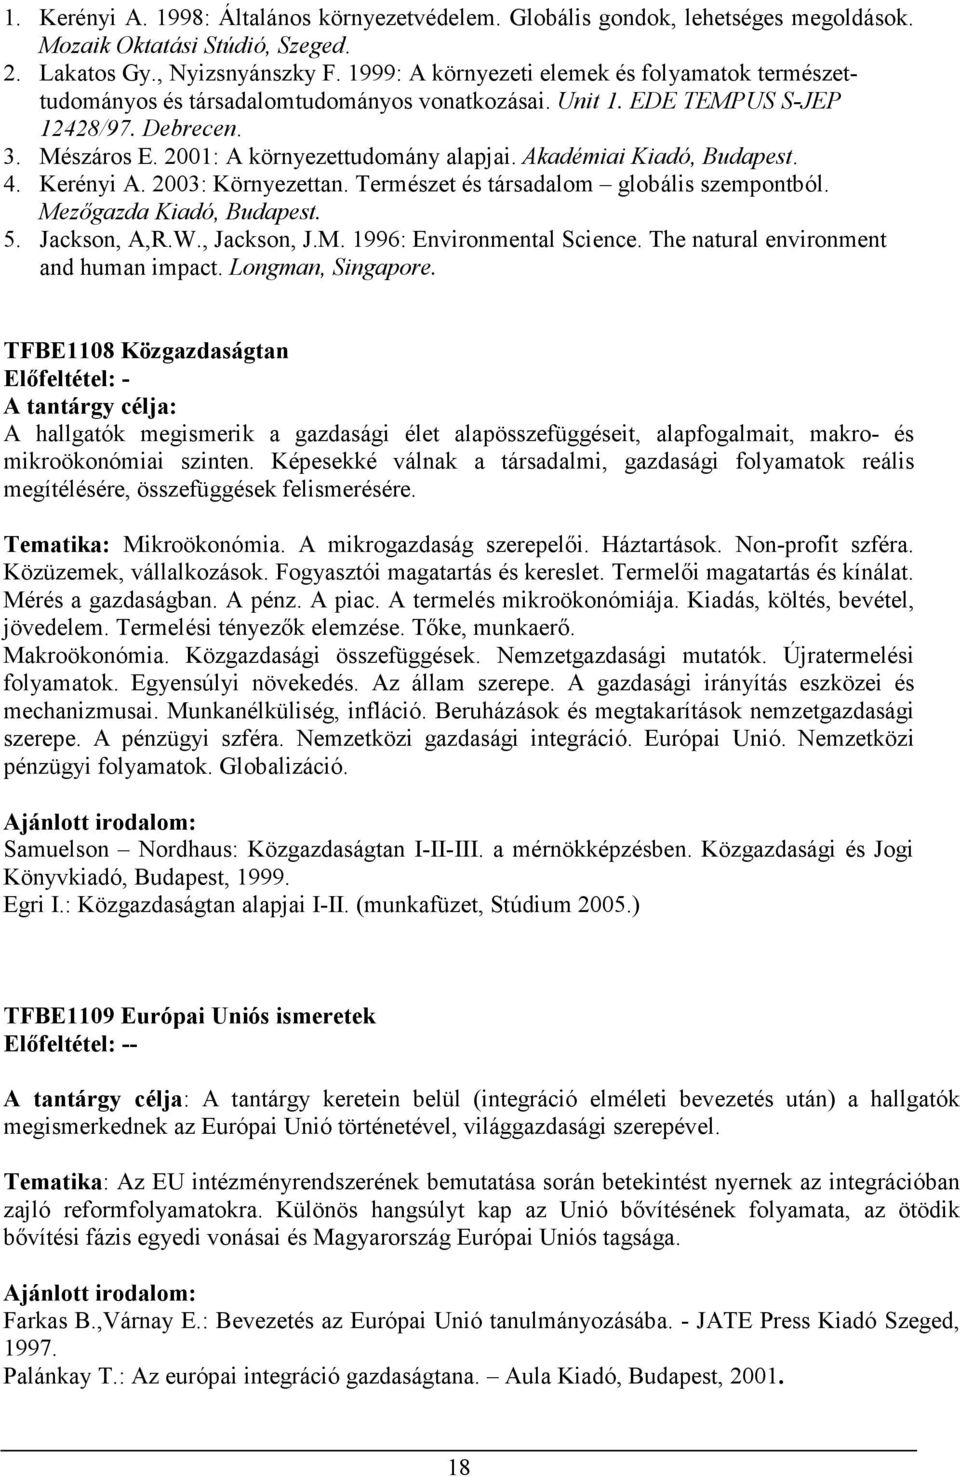 Akadémiai Kiadó, Budapest. 4. Kerényi A. 2003: Környezettan. Természet és társadalom globális szempontból. Mezıgazda Kiadó, Budapest. 5. Jackson, A,R.W., Jackson, J.M. 1996: Environmental Science.